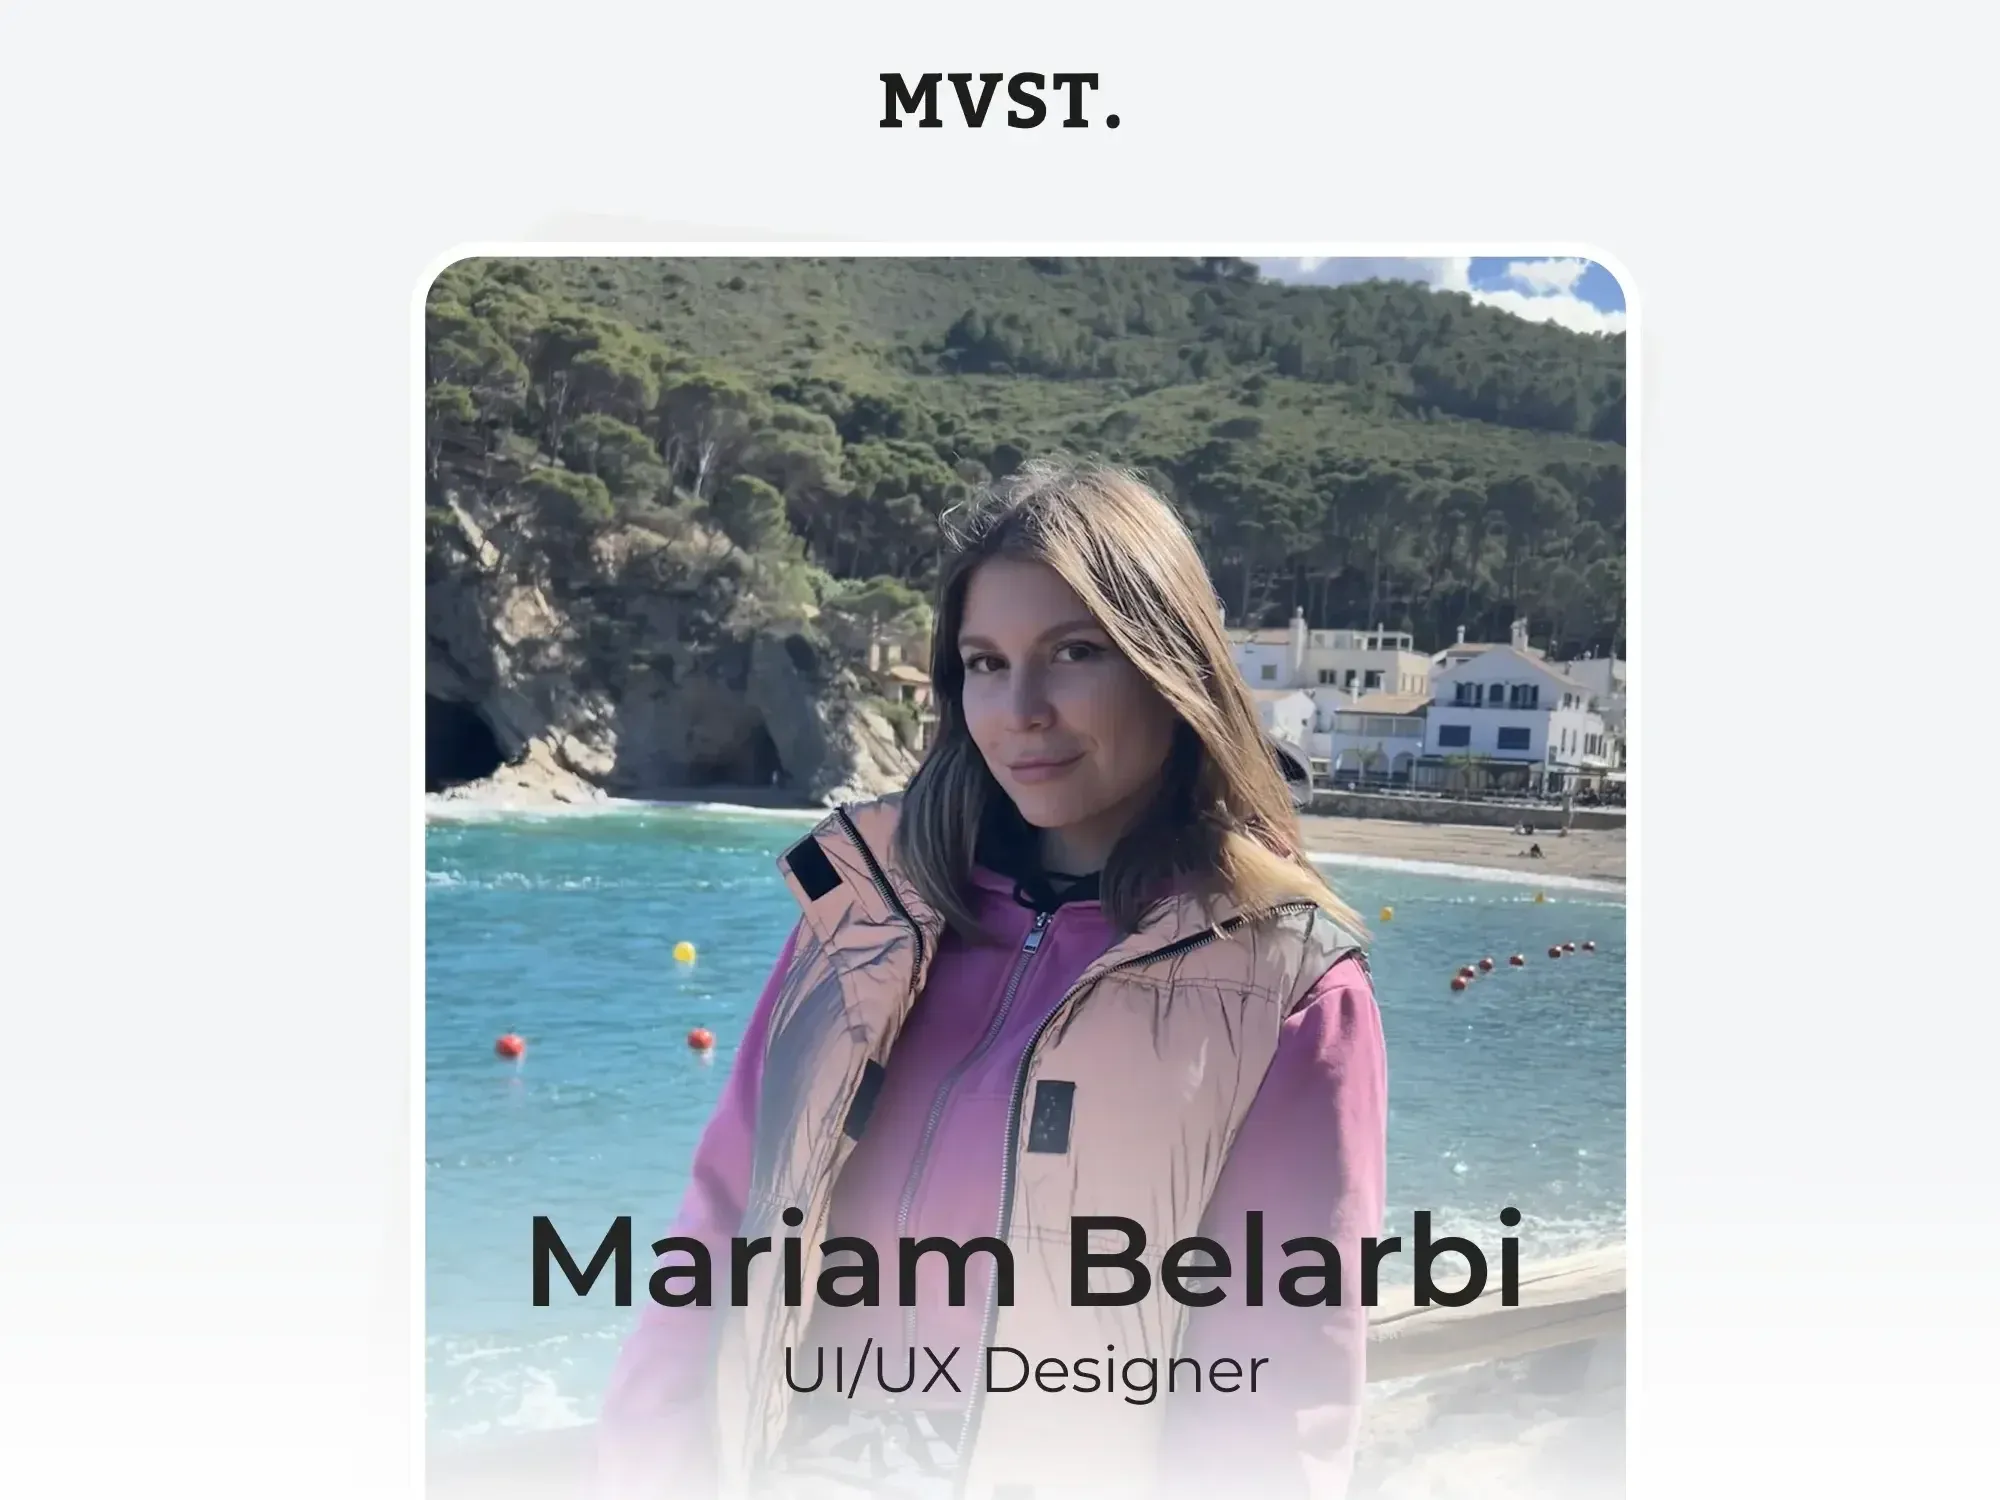 Willkommen bei MVST, Mariam!